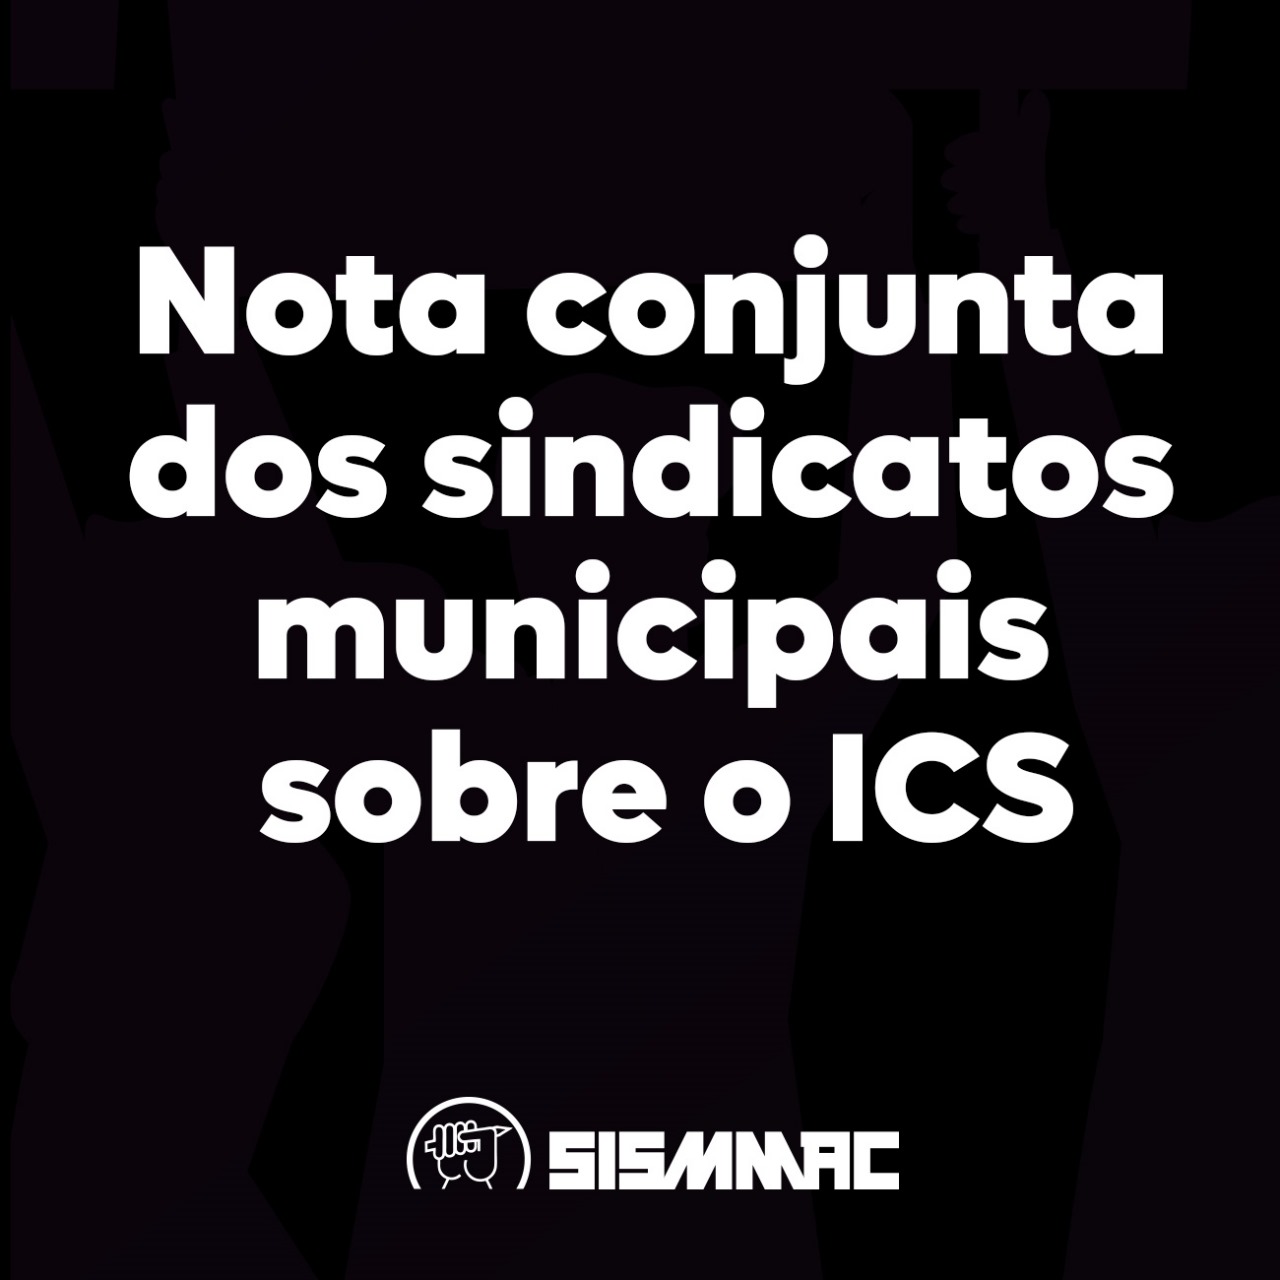 nota-sindicatos-sismmac-ics-curitiba